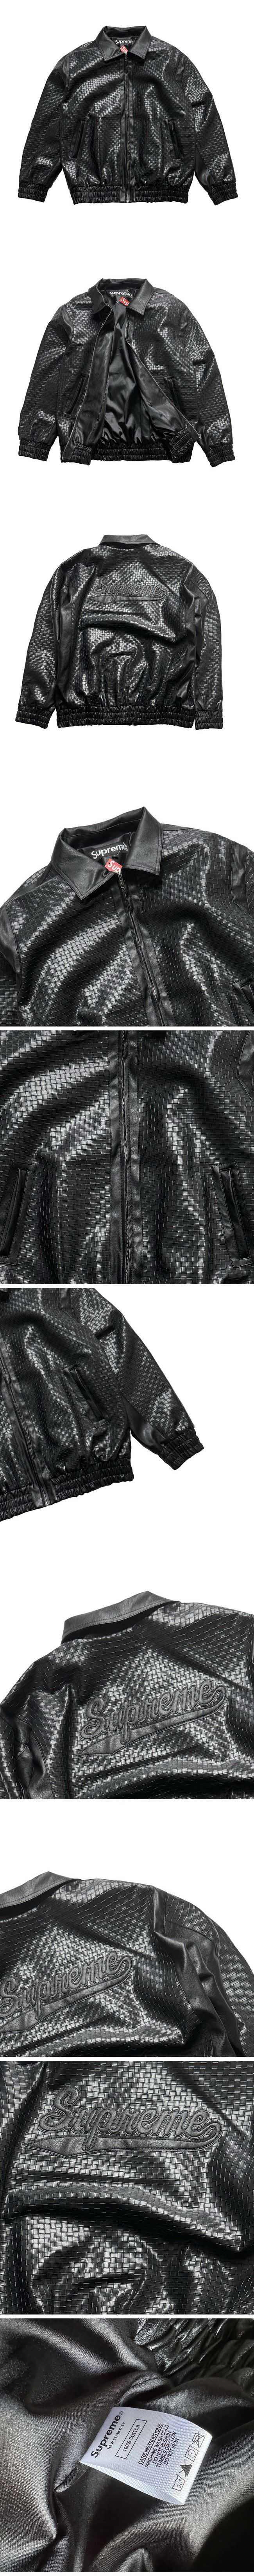 Supreme 23FW Woven Leather Varsity Jacket シュプリーム 23FW ウーブン レザー バーシティ ジャケット